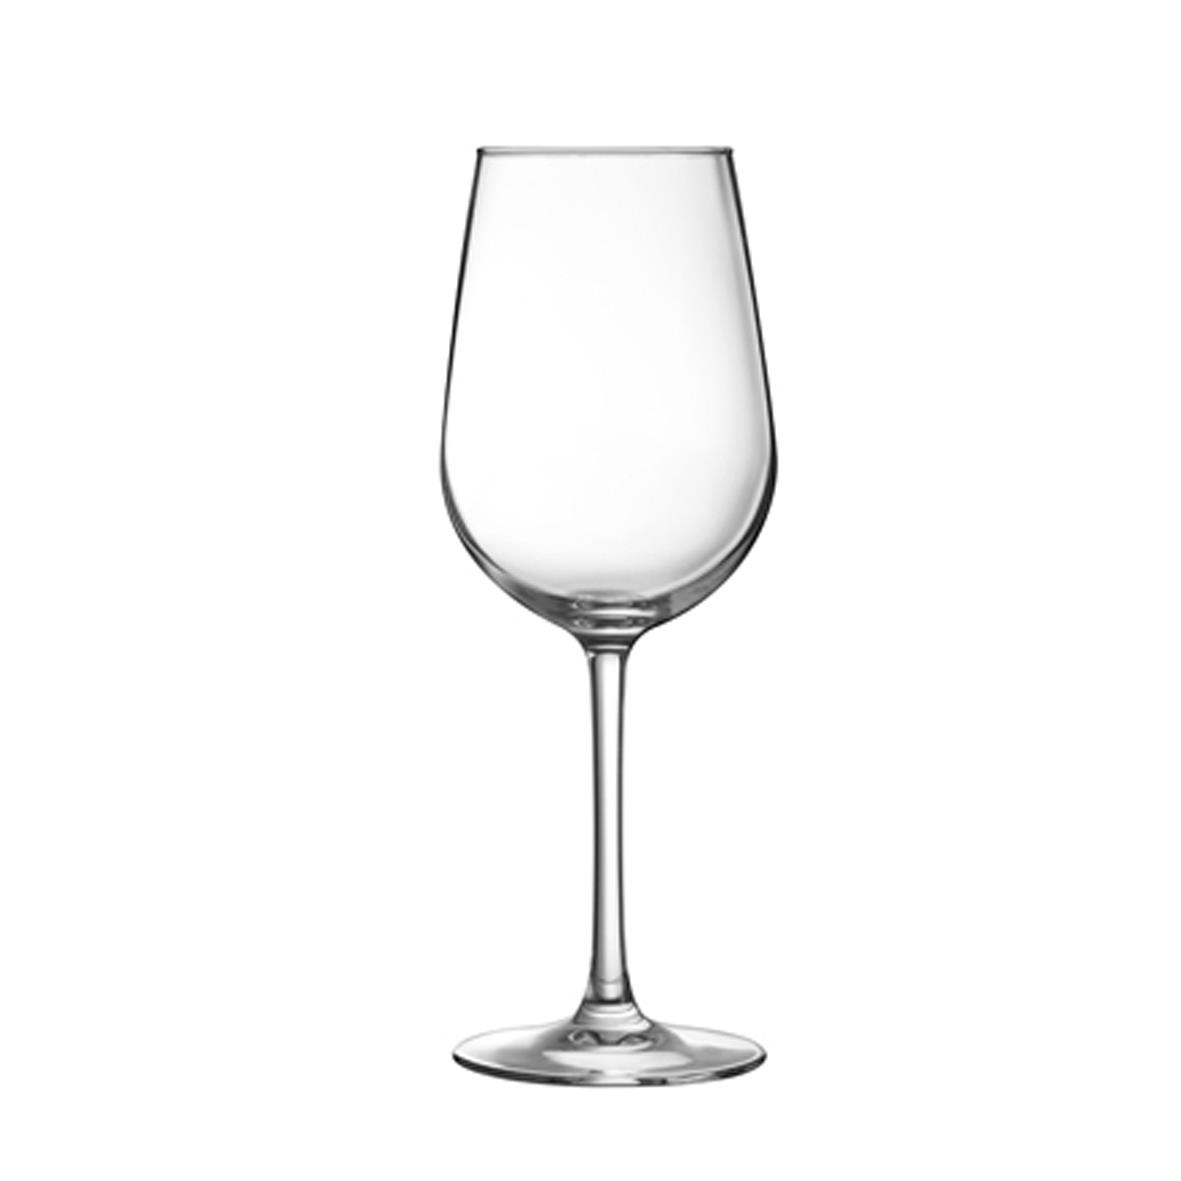 Weinglas Domaine mit einem Fassungsvermögen von 37 cl für die Gravur oder den Druck bestimmt